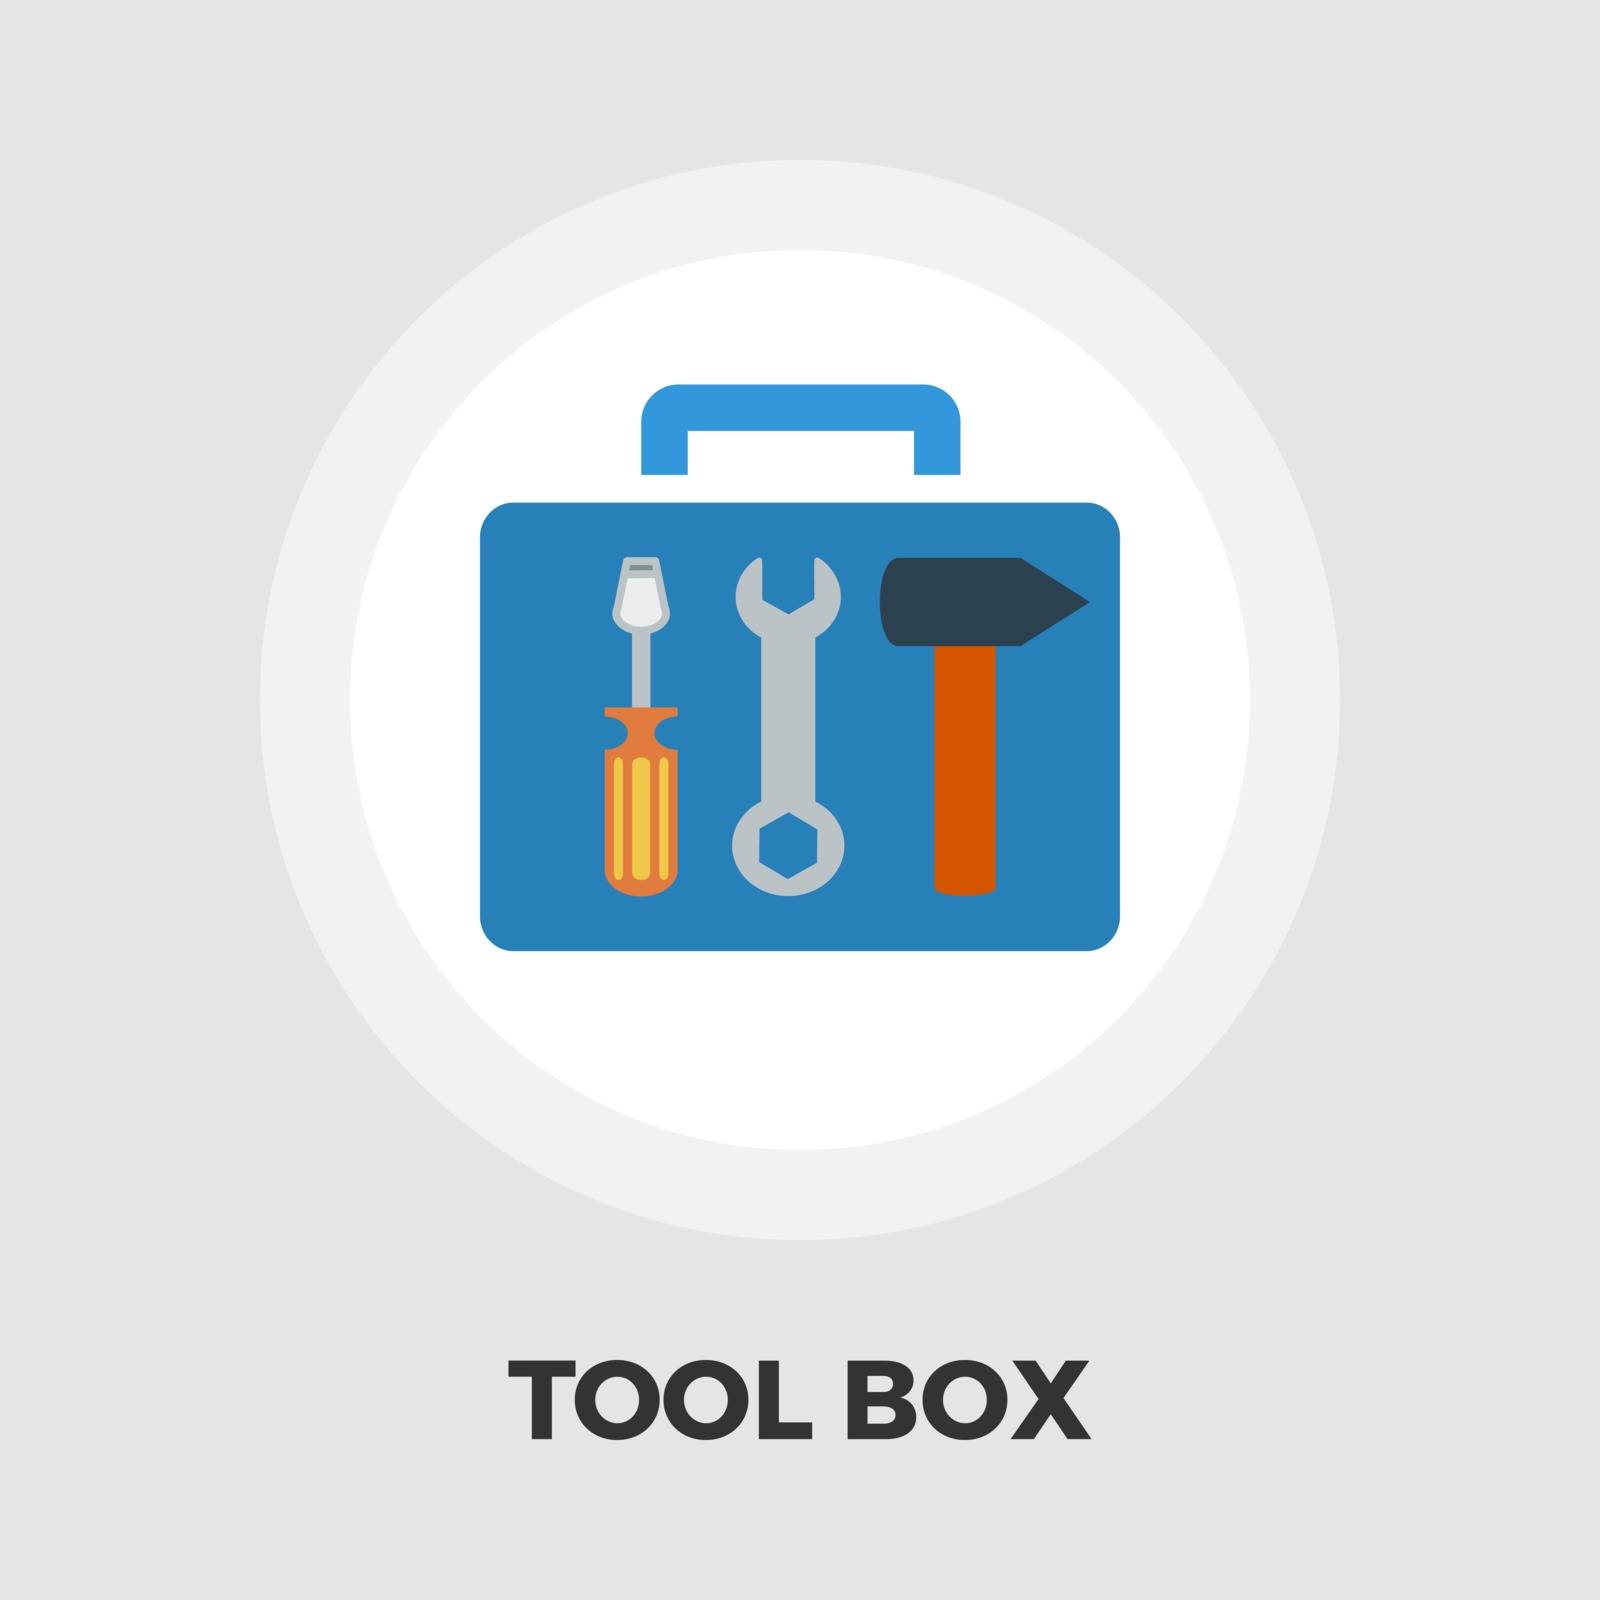 Tool box icon flat by smoki